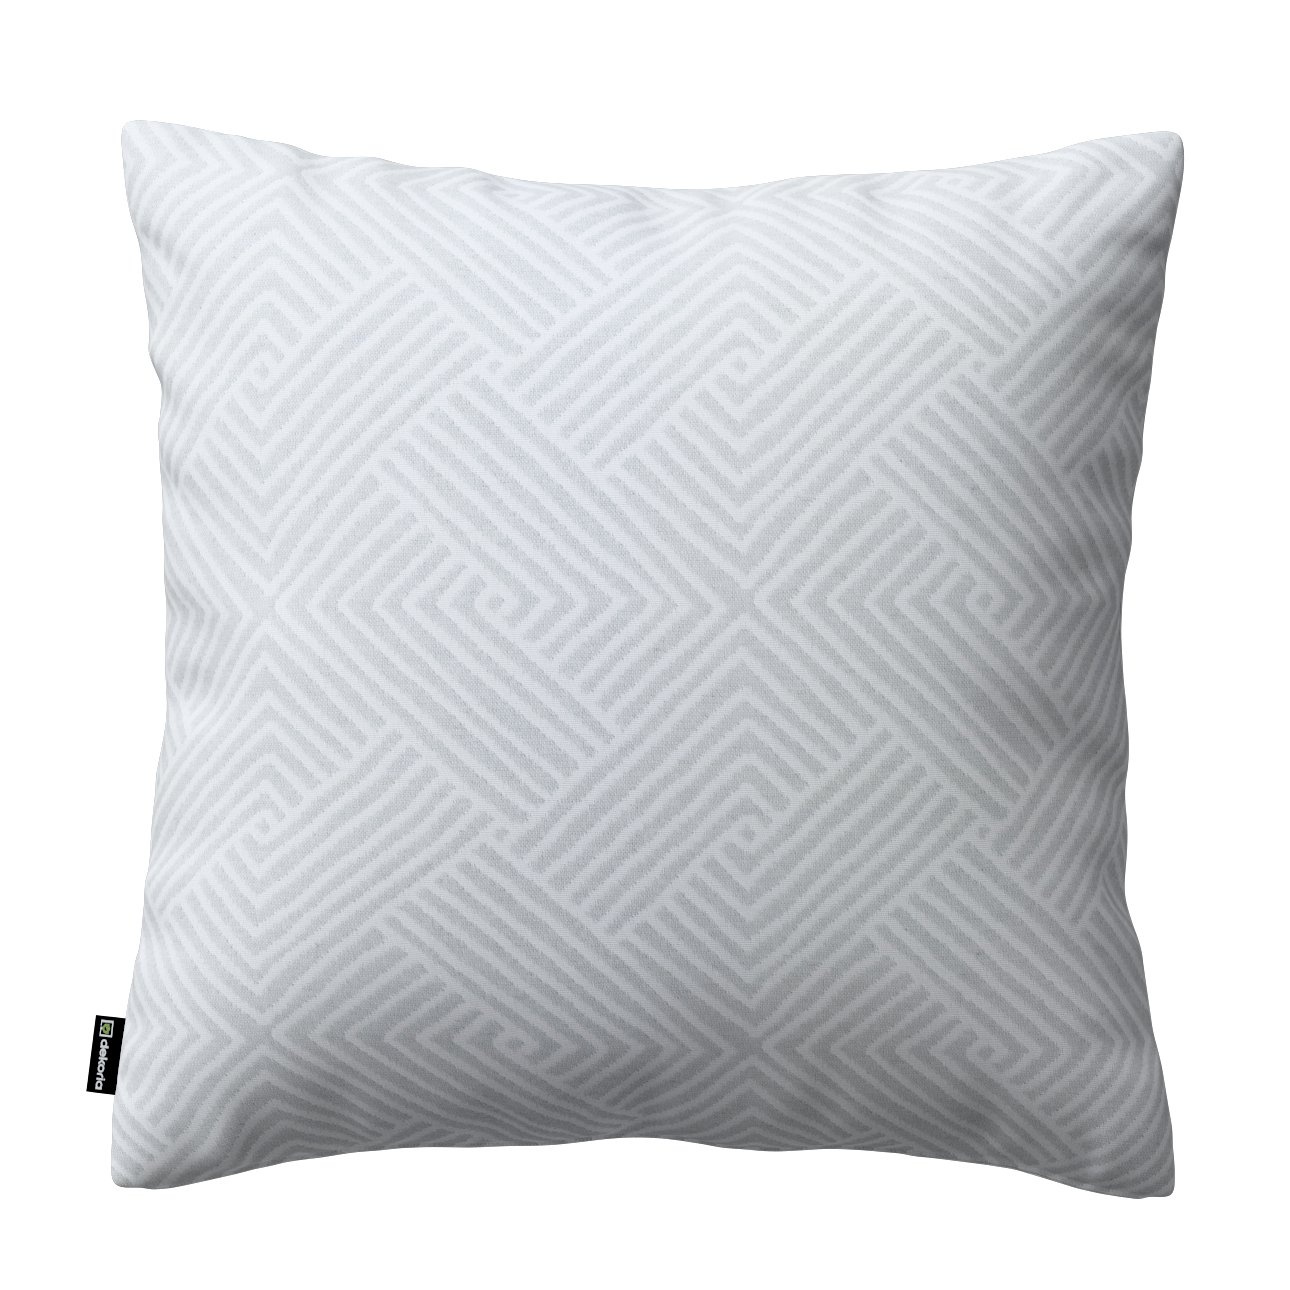 Dekoria Karin - jednoduchá obliečka, sivo-biele geometrické vzory, 50 x 50 cm, Sunny, 143-43